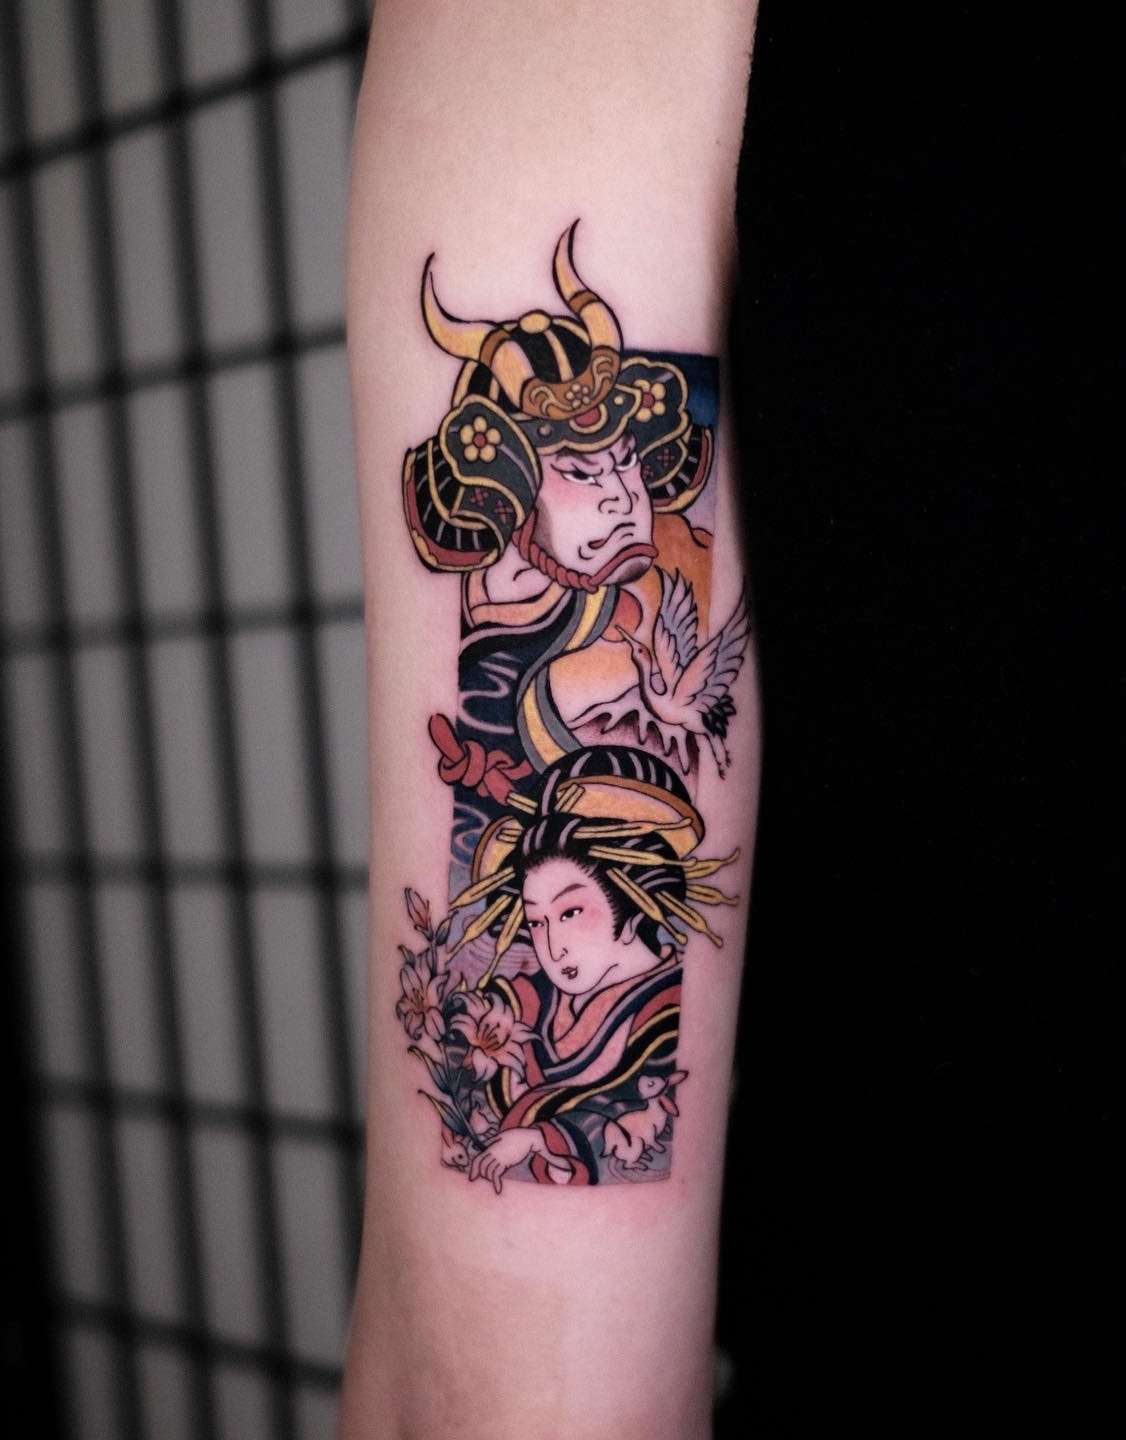 Colorful Samurai Tattoo on Arm